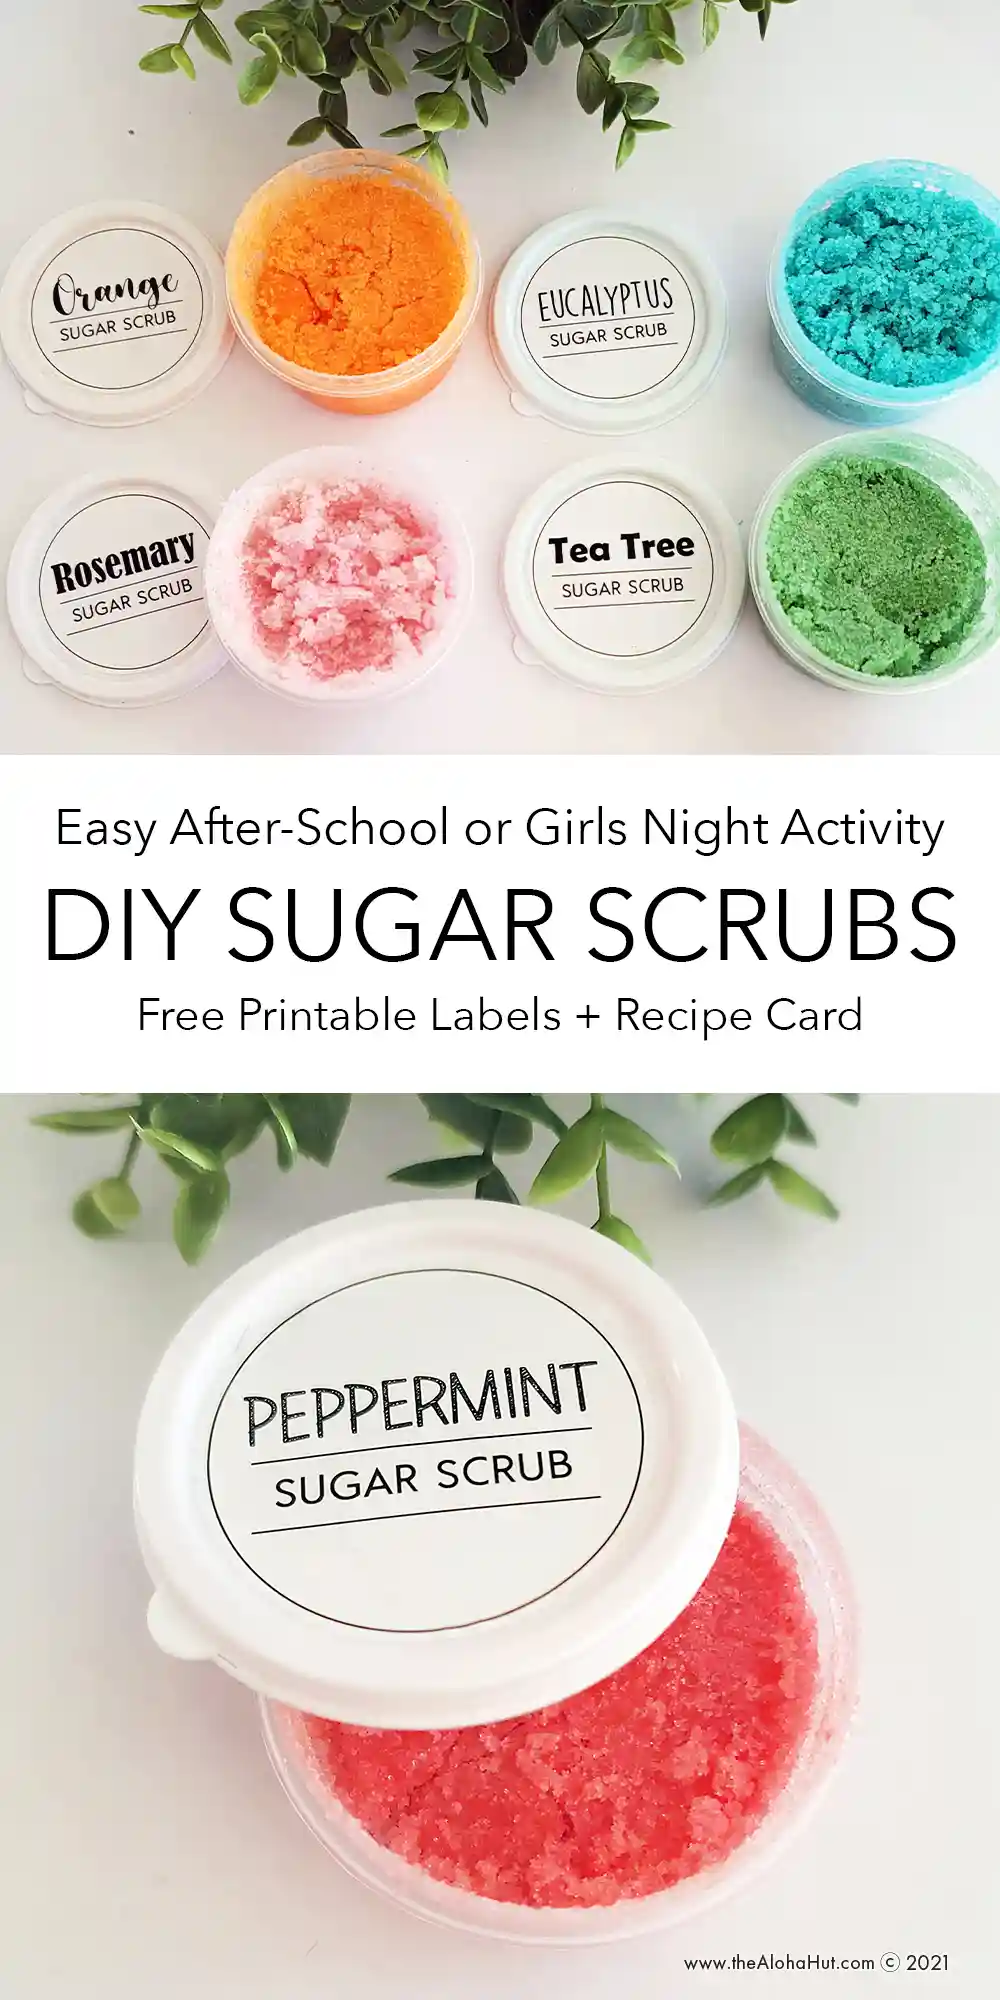 4-Ingredient Uplifting Sugar Scrub (DIY) - Inspired Edibles